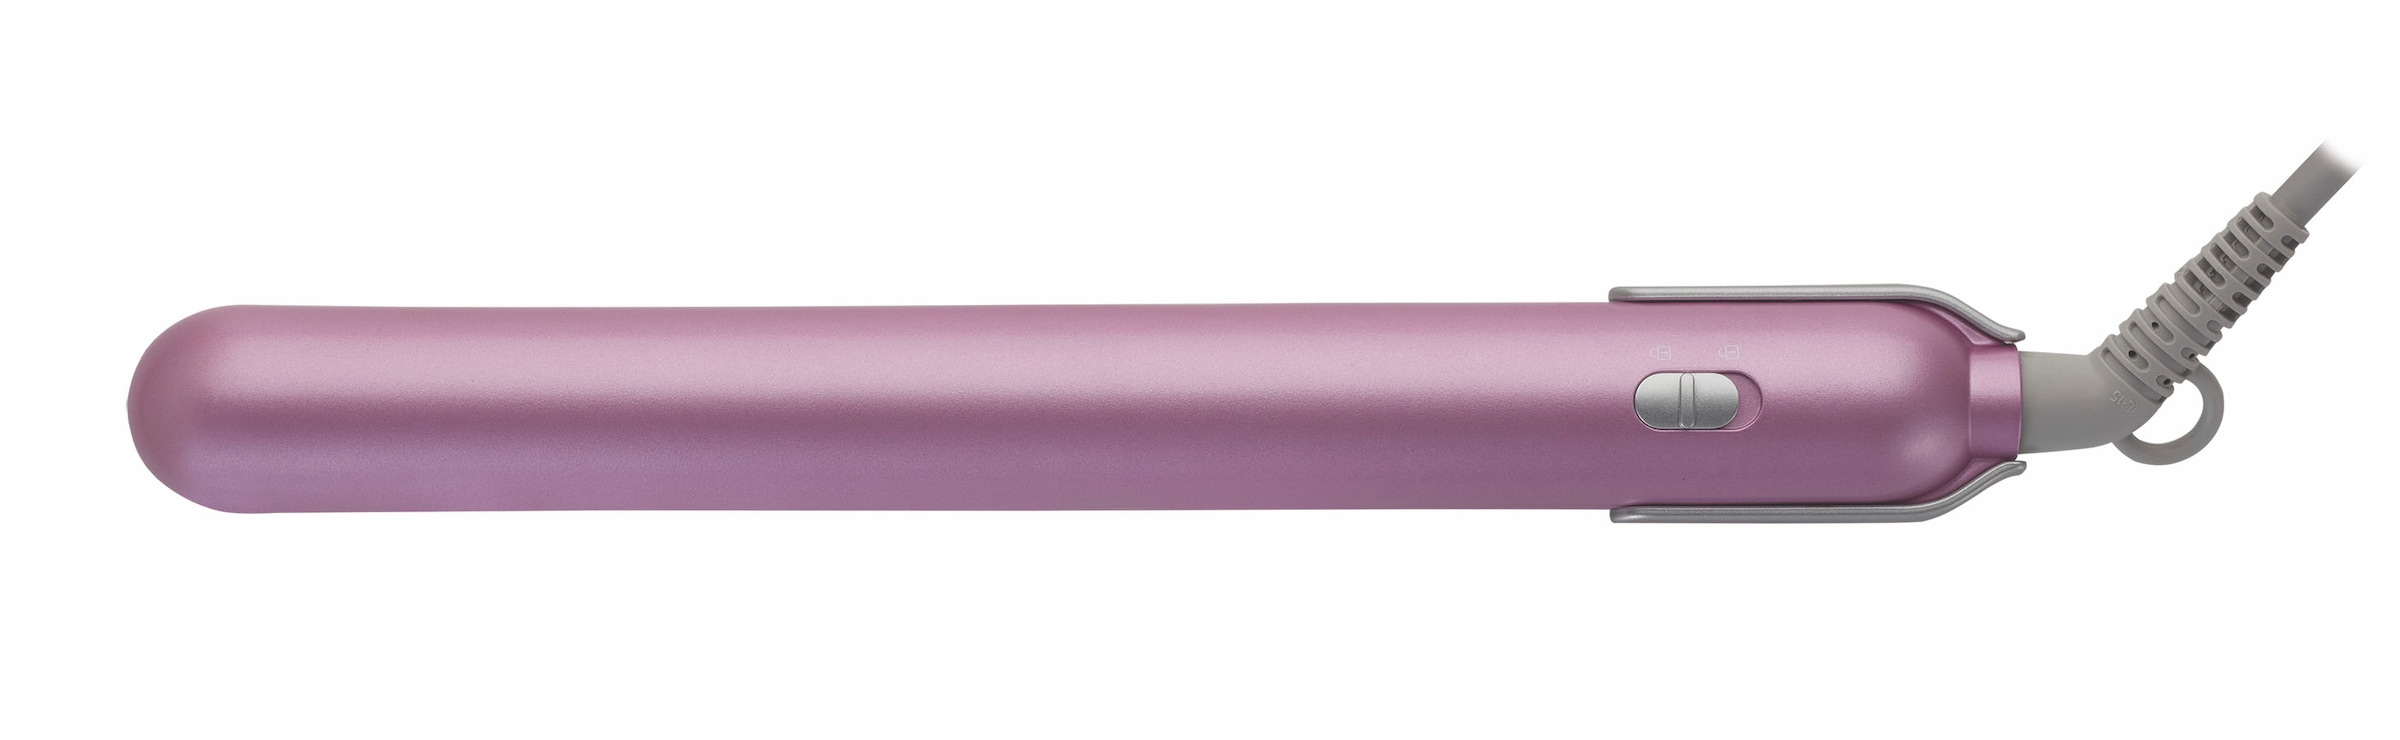 Lotusöl 7130«, Glätteisen Keramikbeschichtung OTTO bei mit Pink »HS Grundig